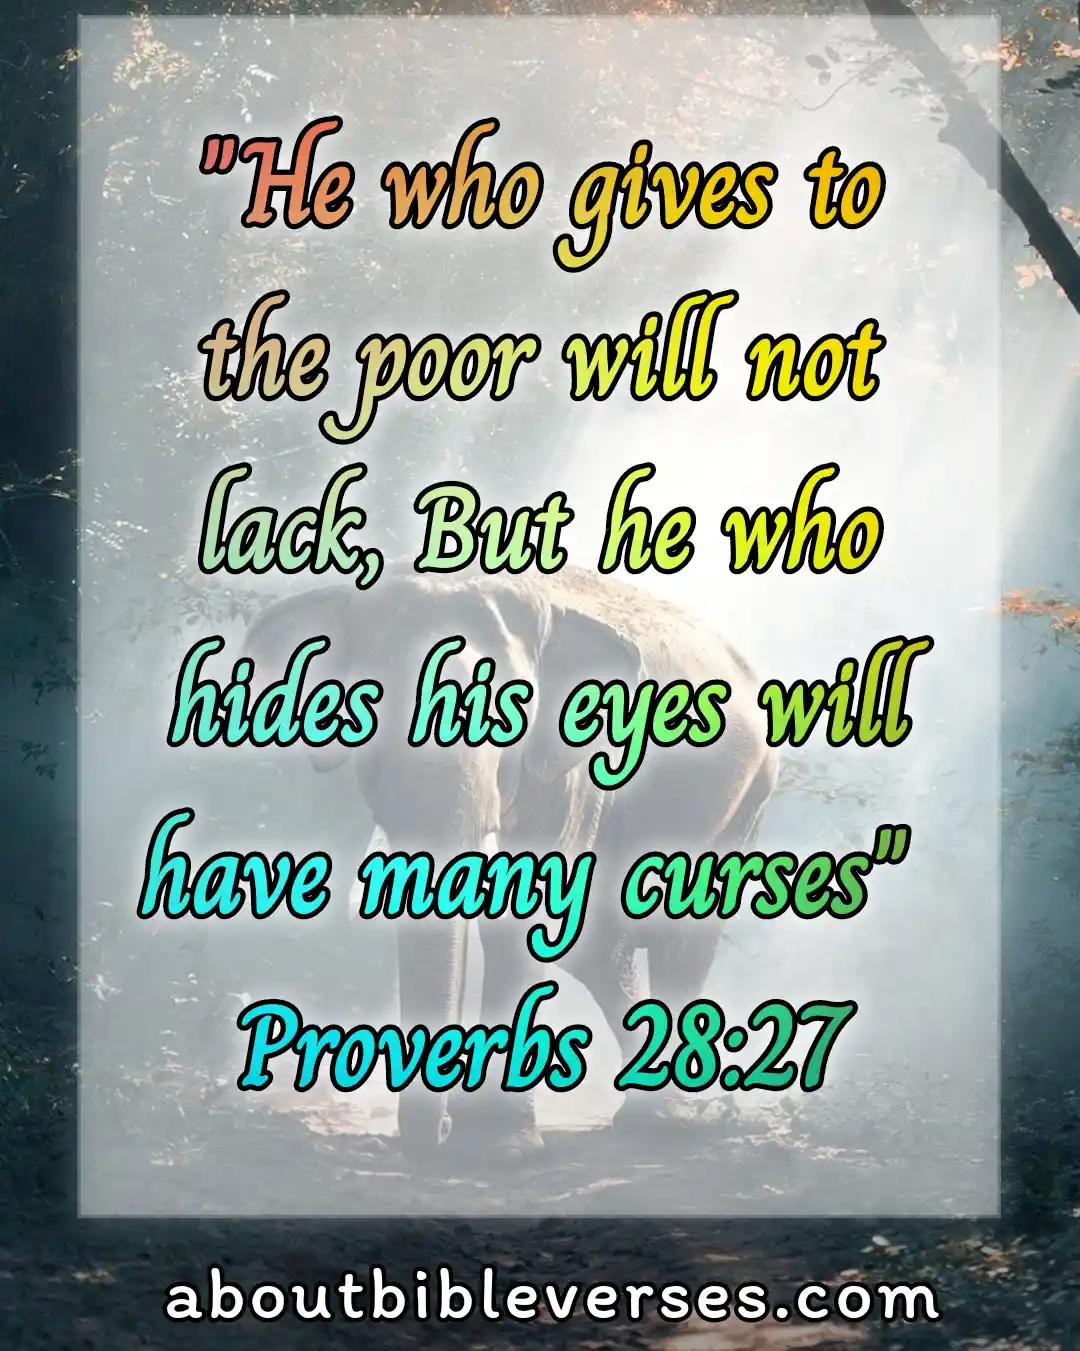 [Best] Más de 13 versículos de la Biblia sobre ayudar y dar a los pobres, necesitados y huérfanos